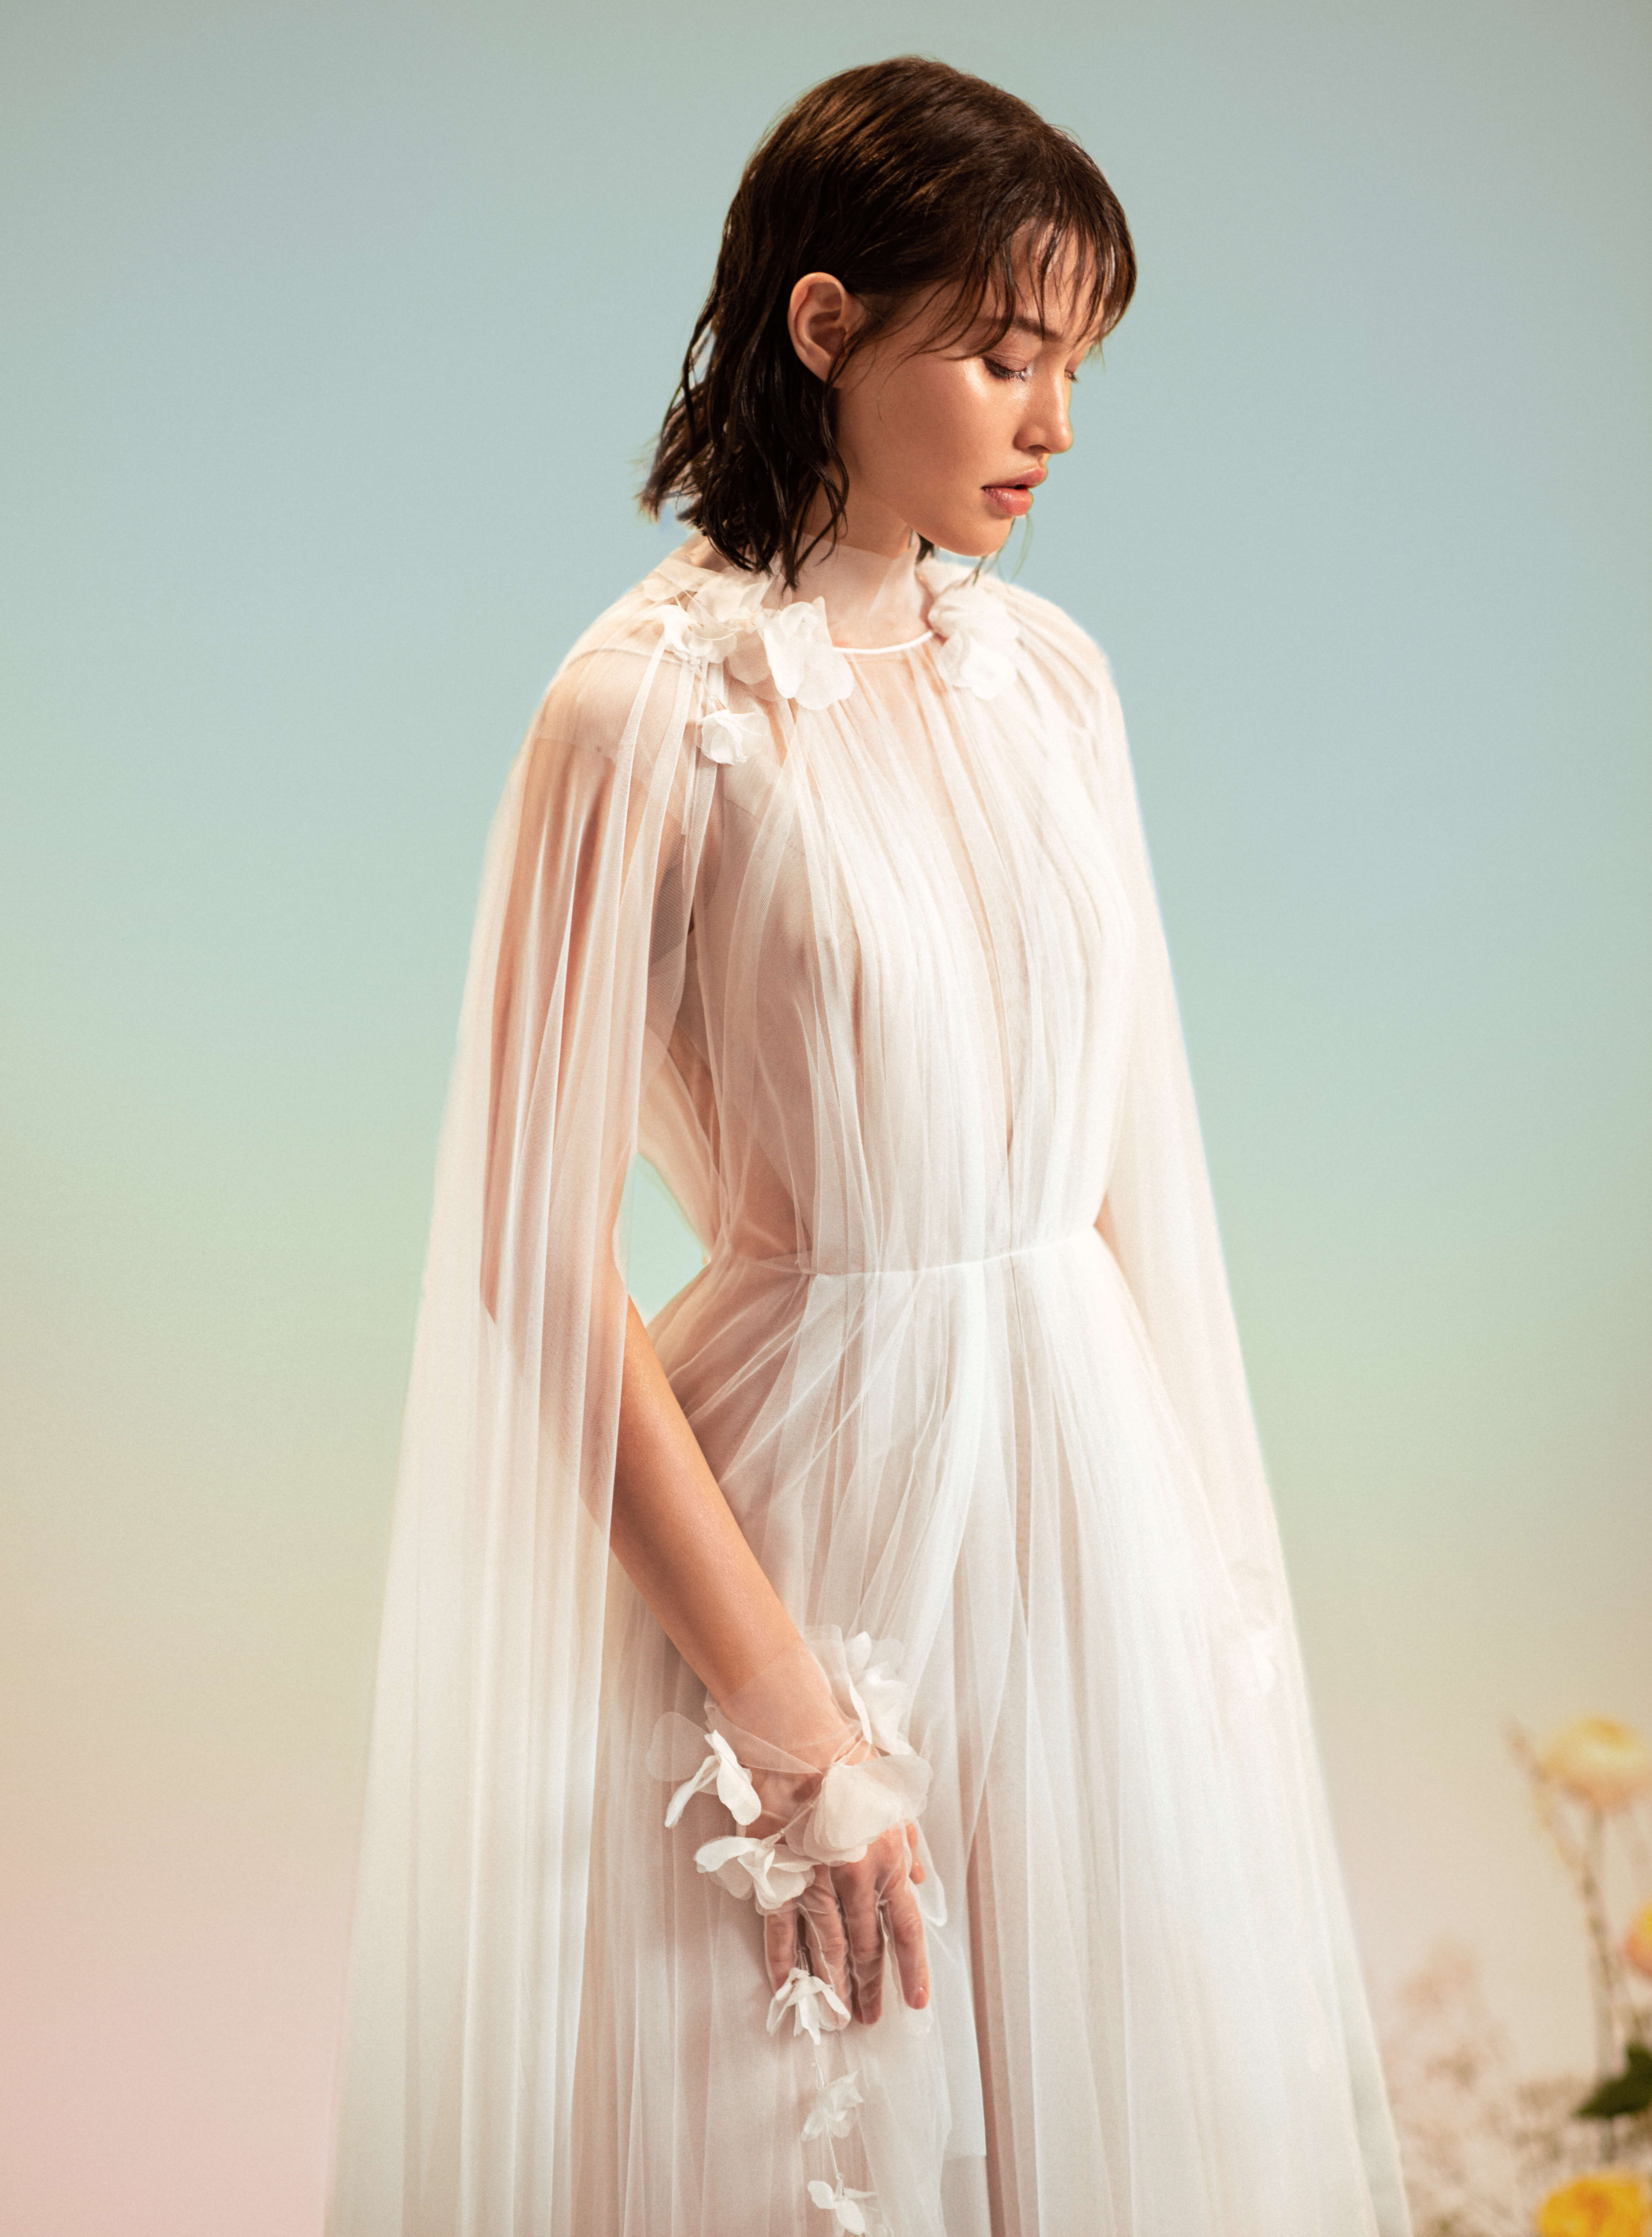 Купить свадебное платье «Мокки+Сова» Рара Авис из коллекции Оазис 2022 года в салоне «Мэри Трюфель»